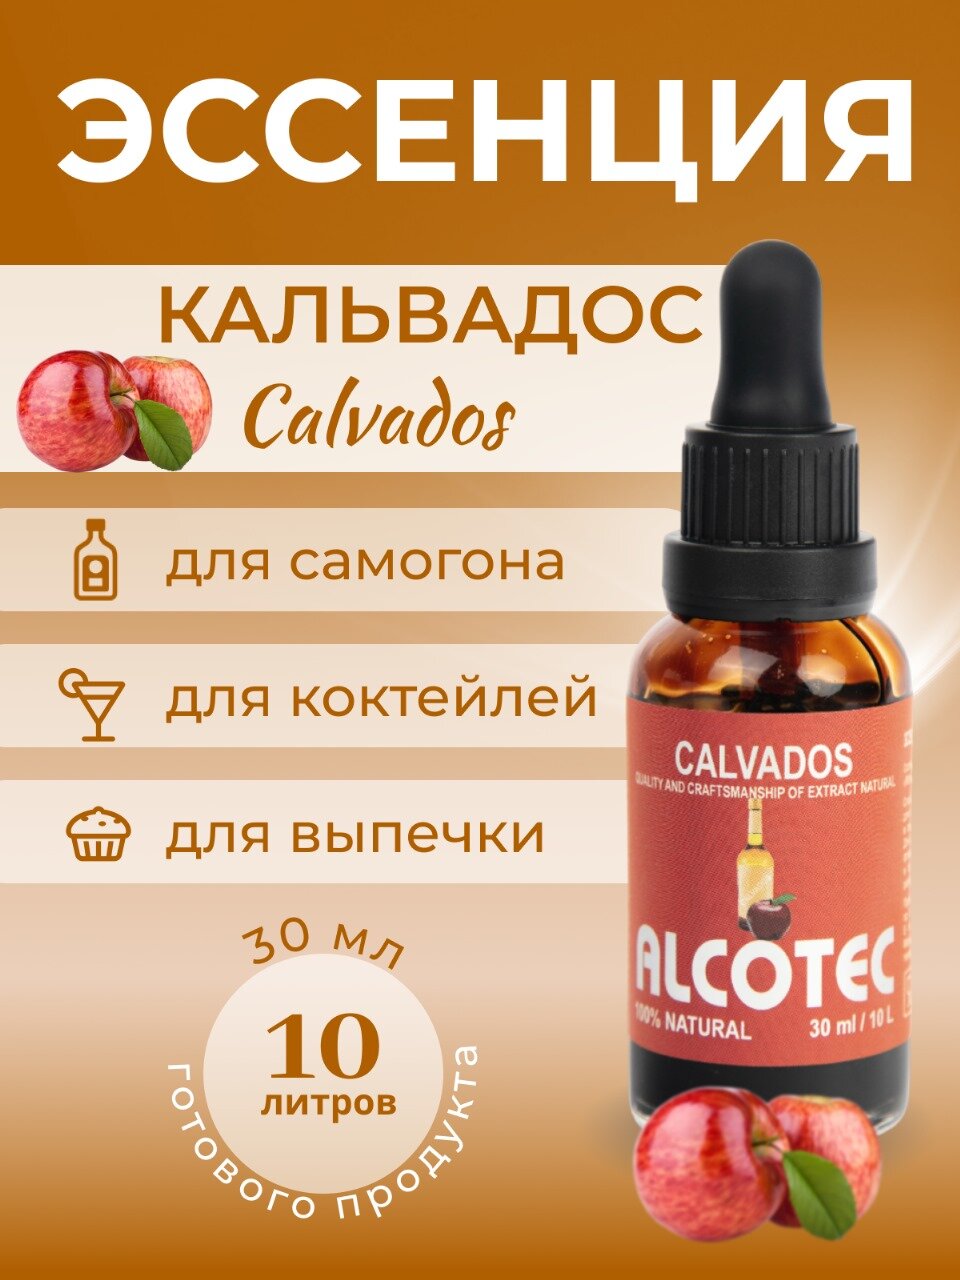 Эссенция Кальвадос ароматизатор пищевой, для самогона, 30 мл- Вкусовой натуральный ароматизатор для самогона.